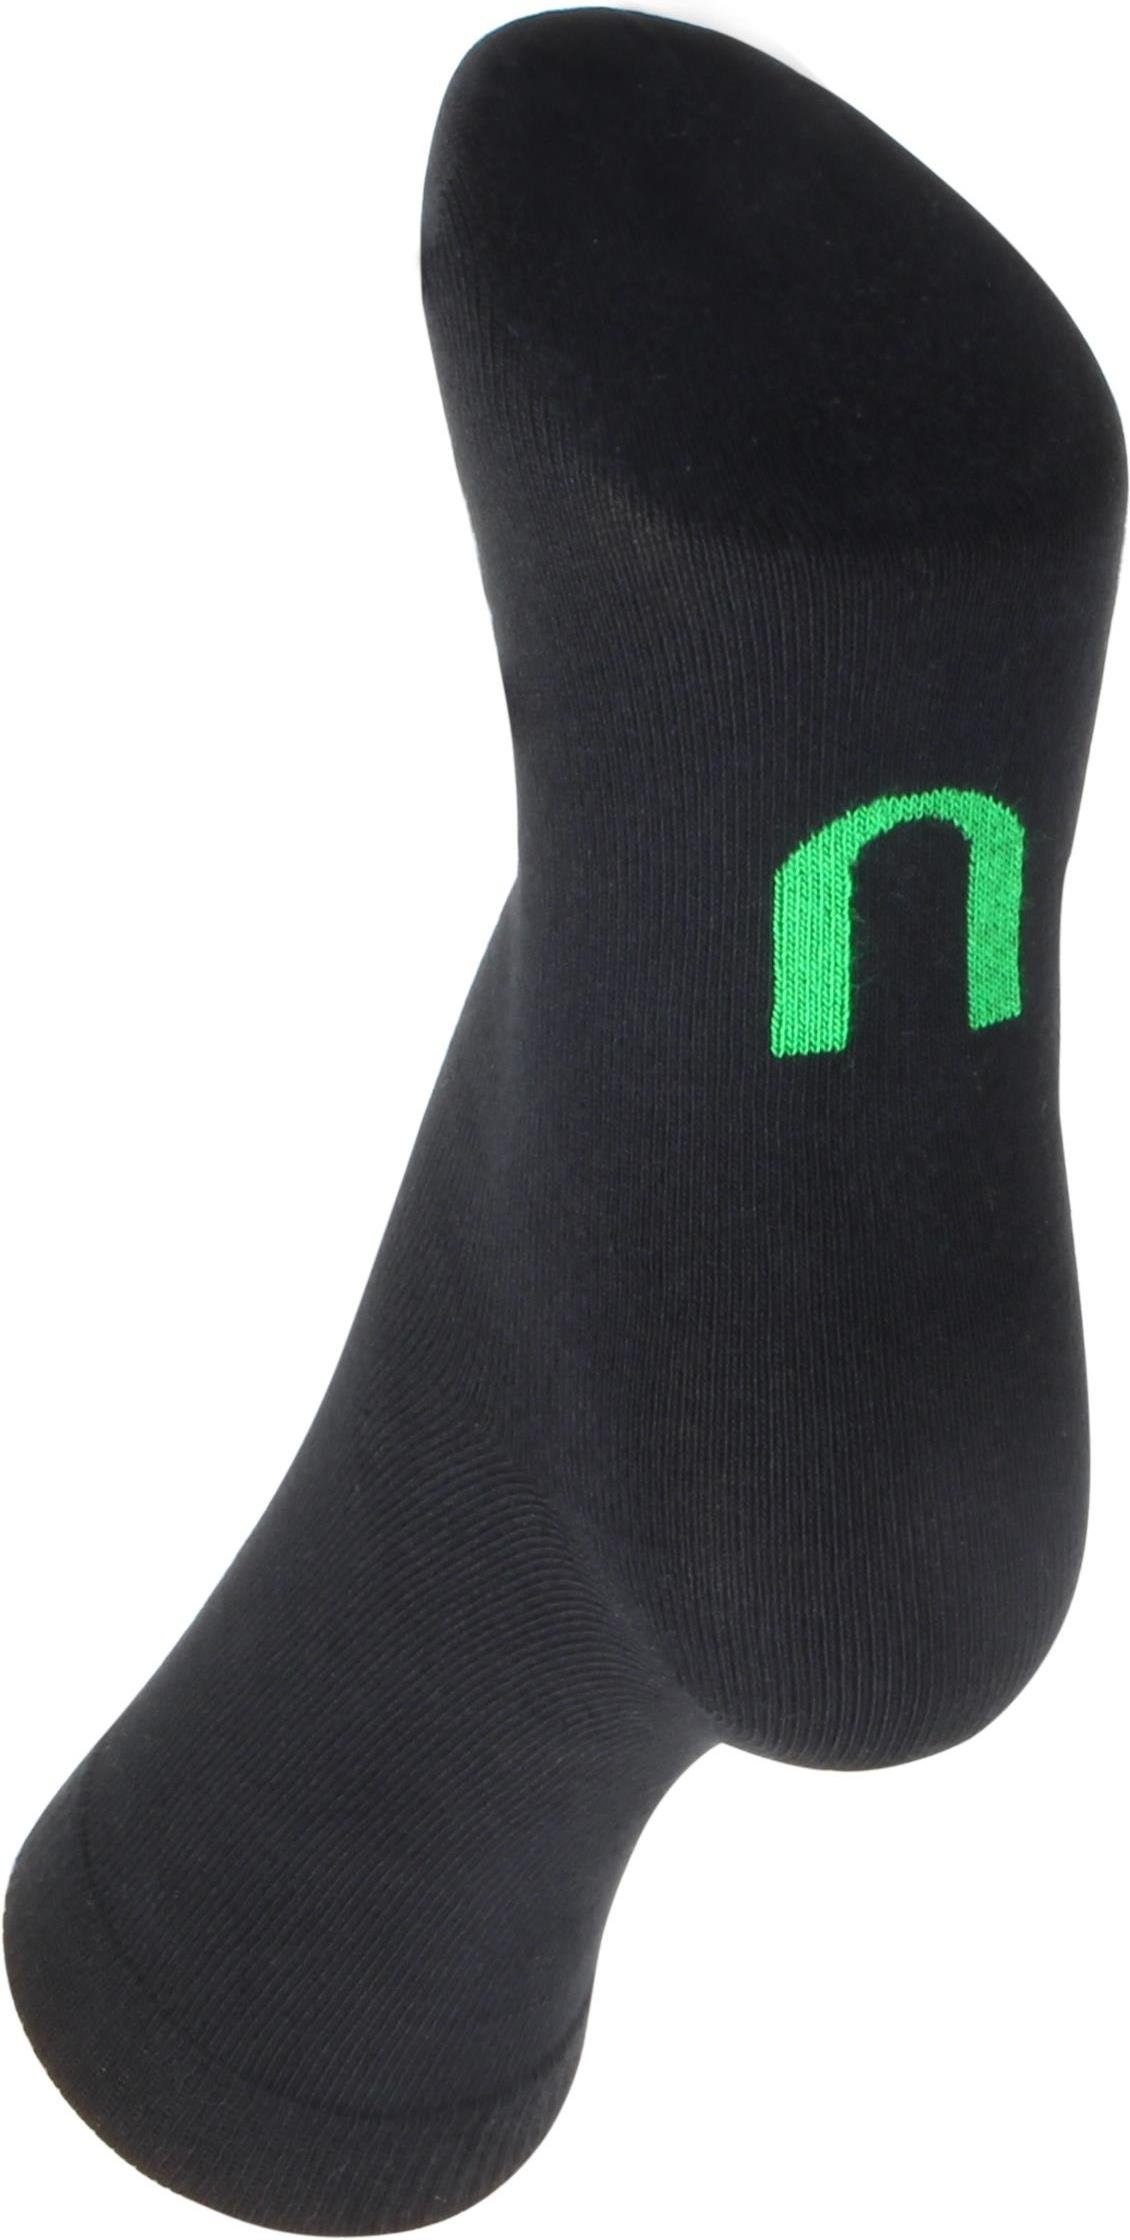 Wäsche/Bademode Socken normani Basicsocken 6 Paar Berufs- und Freizeitsocken Prudent Socks (6 Paar) atmungsaktiv